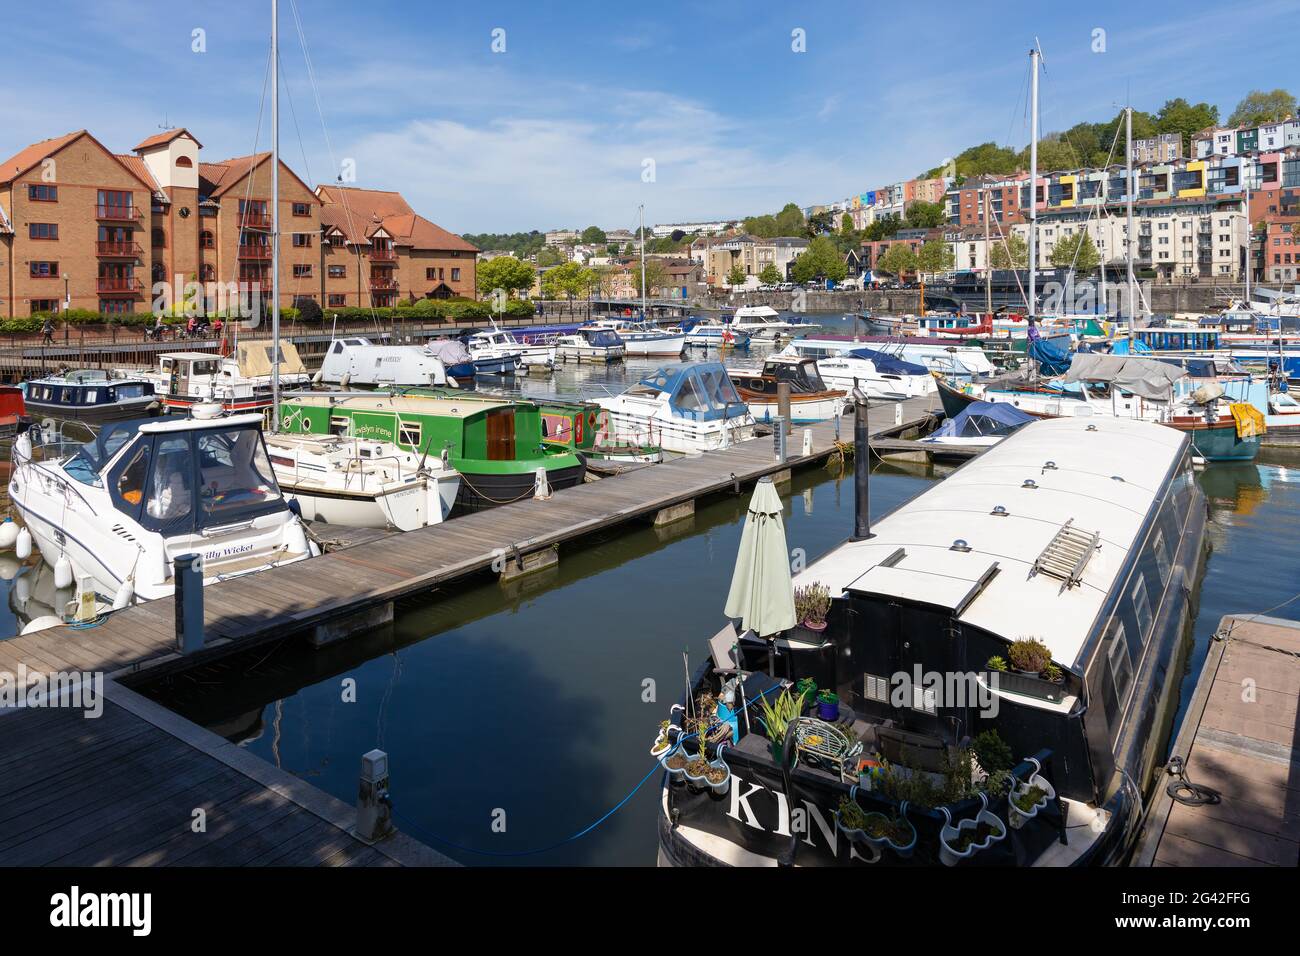 BRISTOL, UK - MAY 14 : Blick auf Boote und farbenfrohe Apartments entlang des Flusses Avon in Bristol am 14. Mai 2019. Nicht identifiziertes Peop Stockfoto